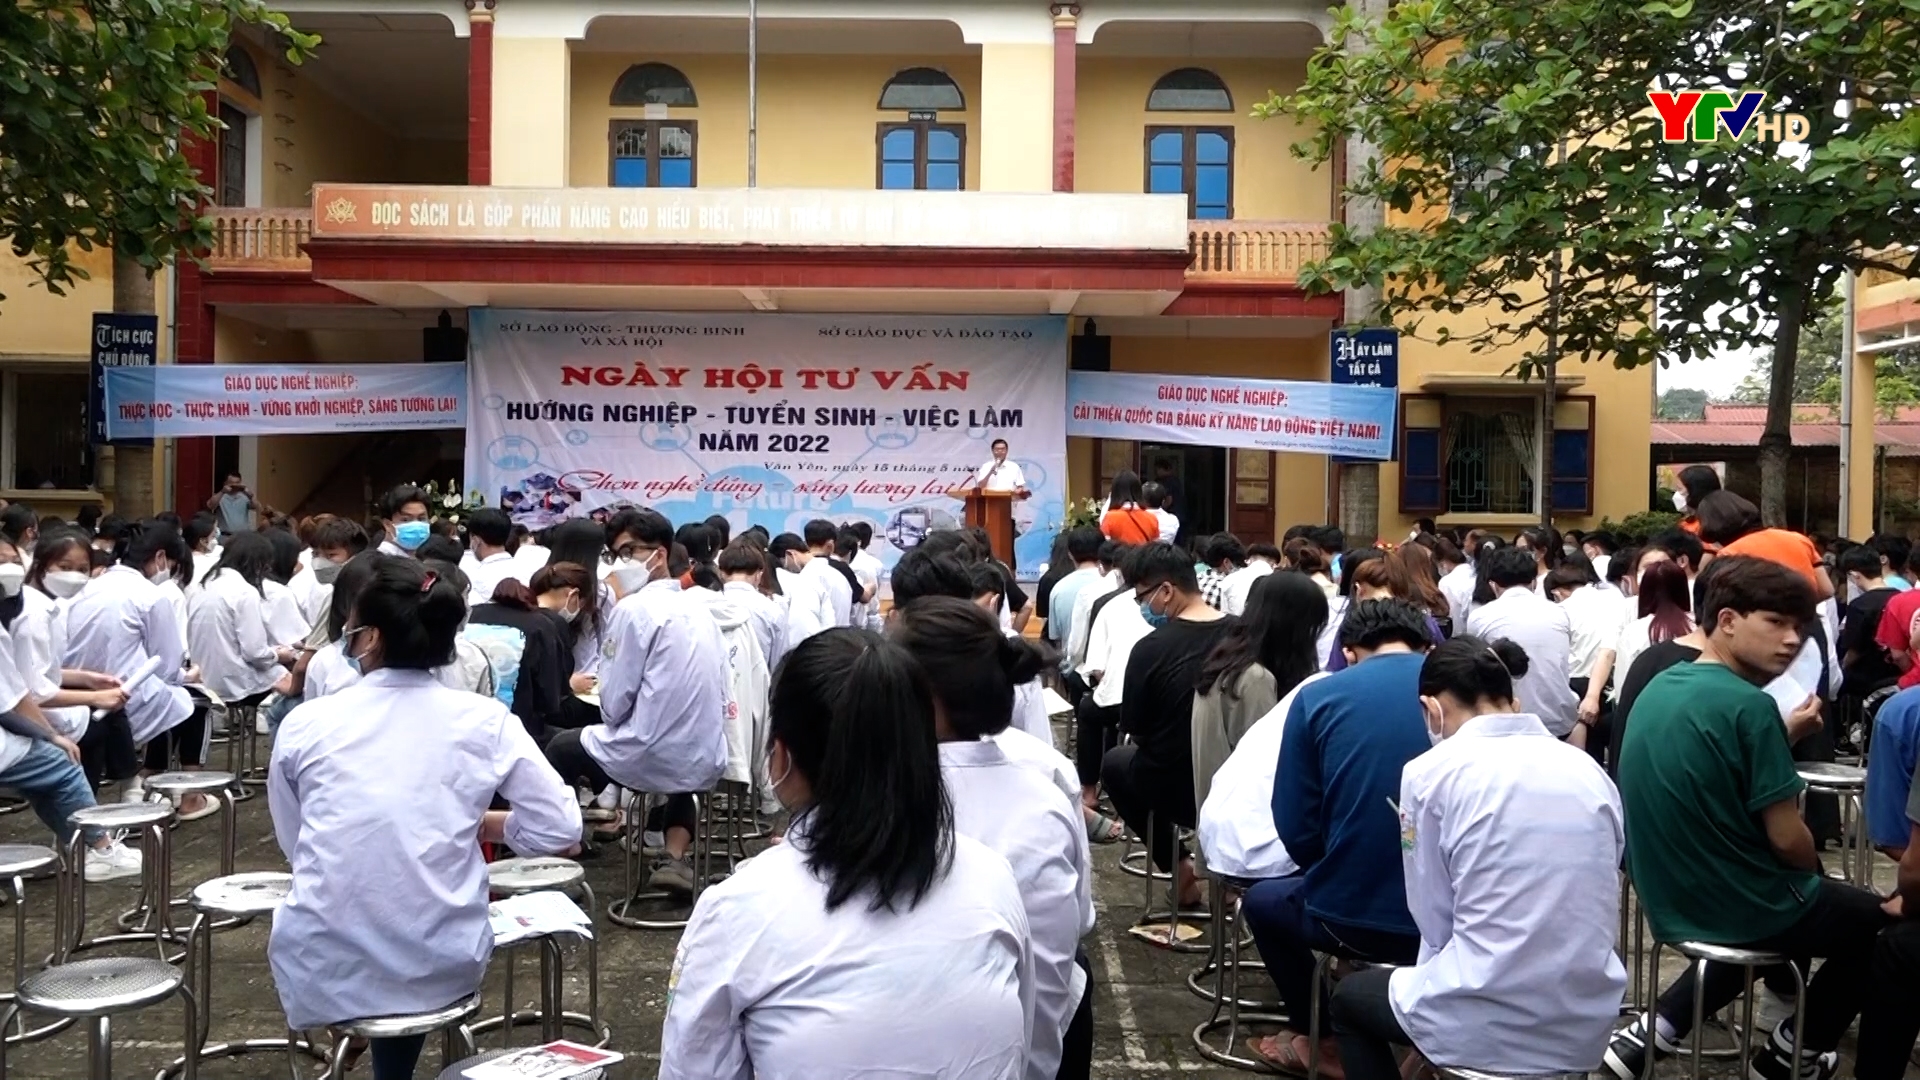 Ngày hội tư vấn hướng nghiệp tại huyện Văn Yên